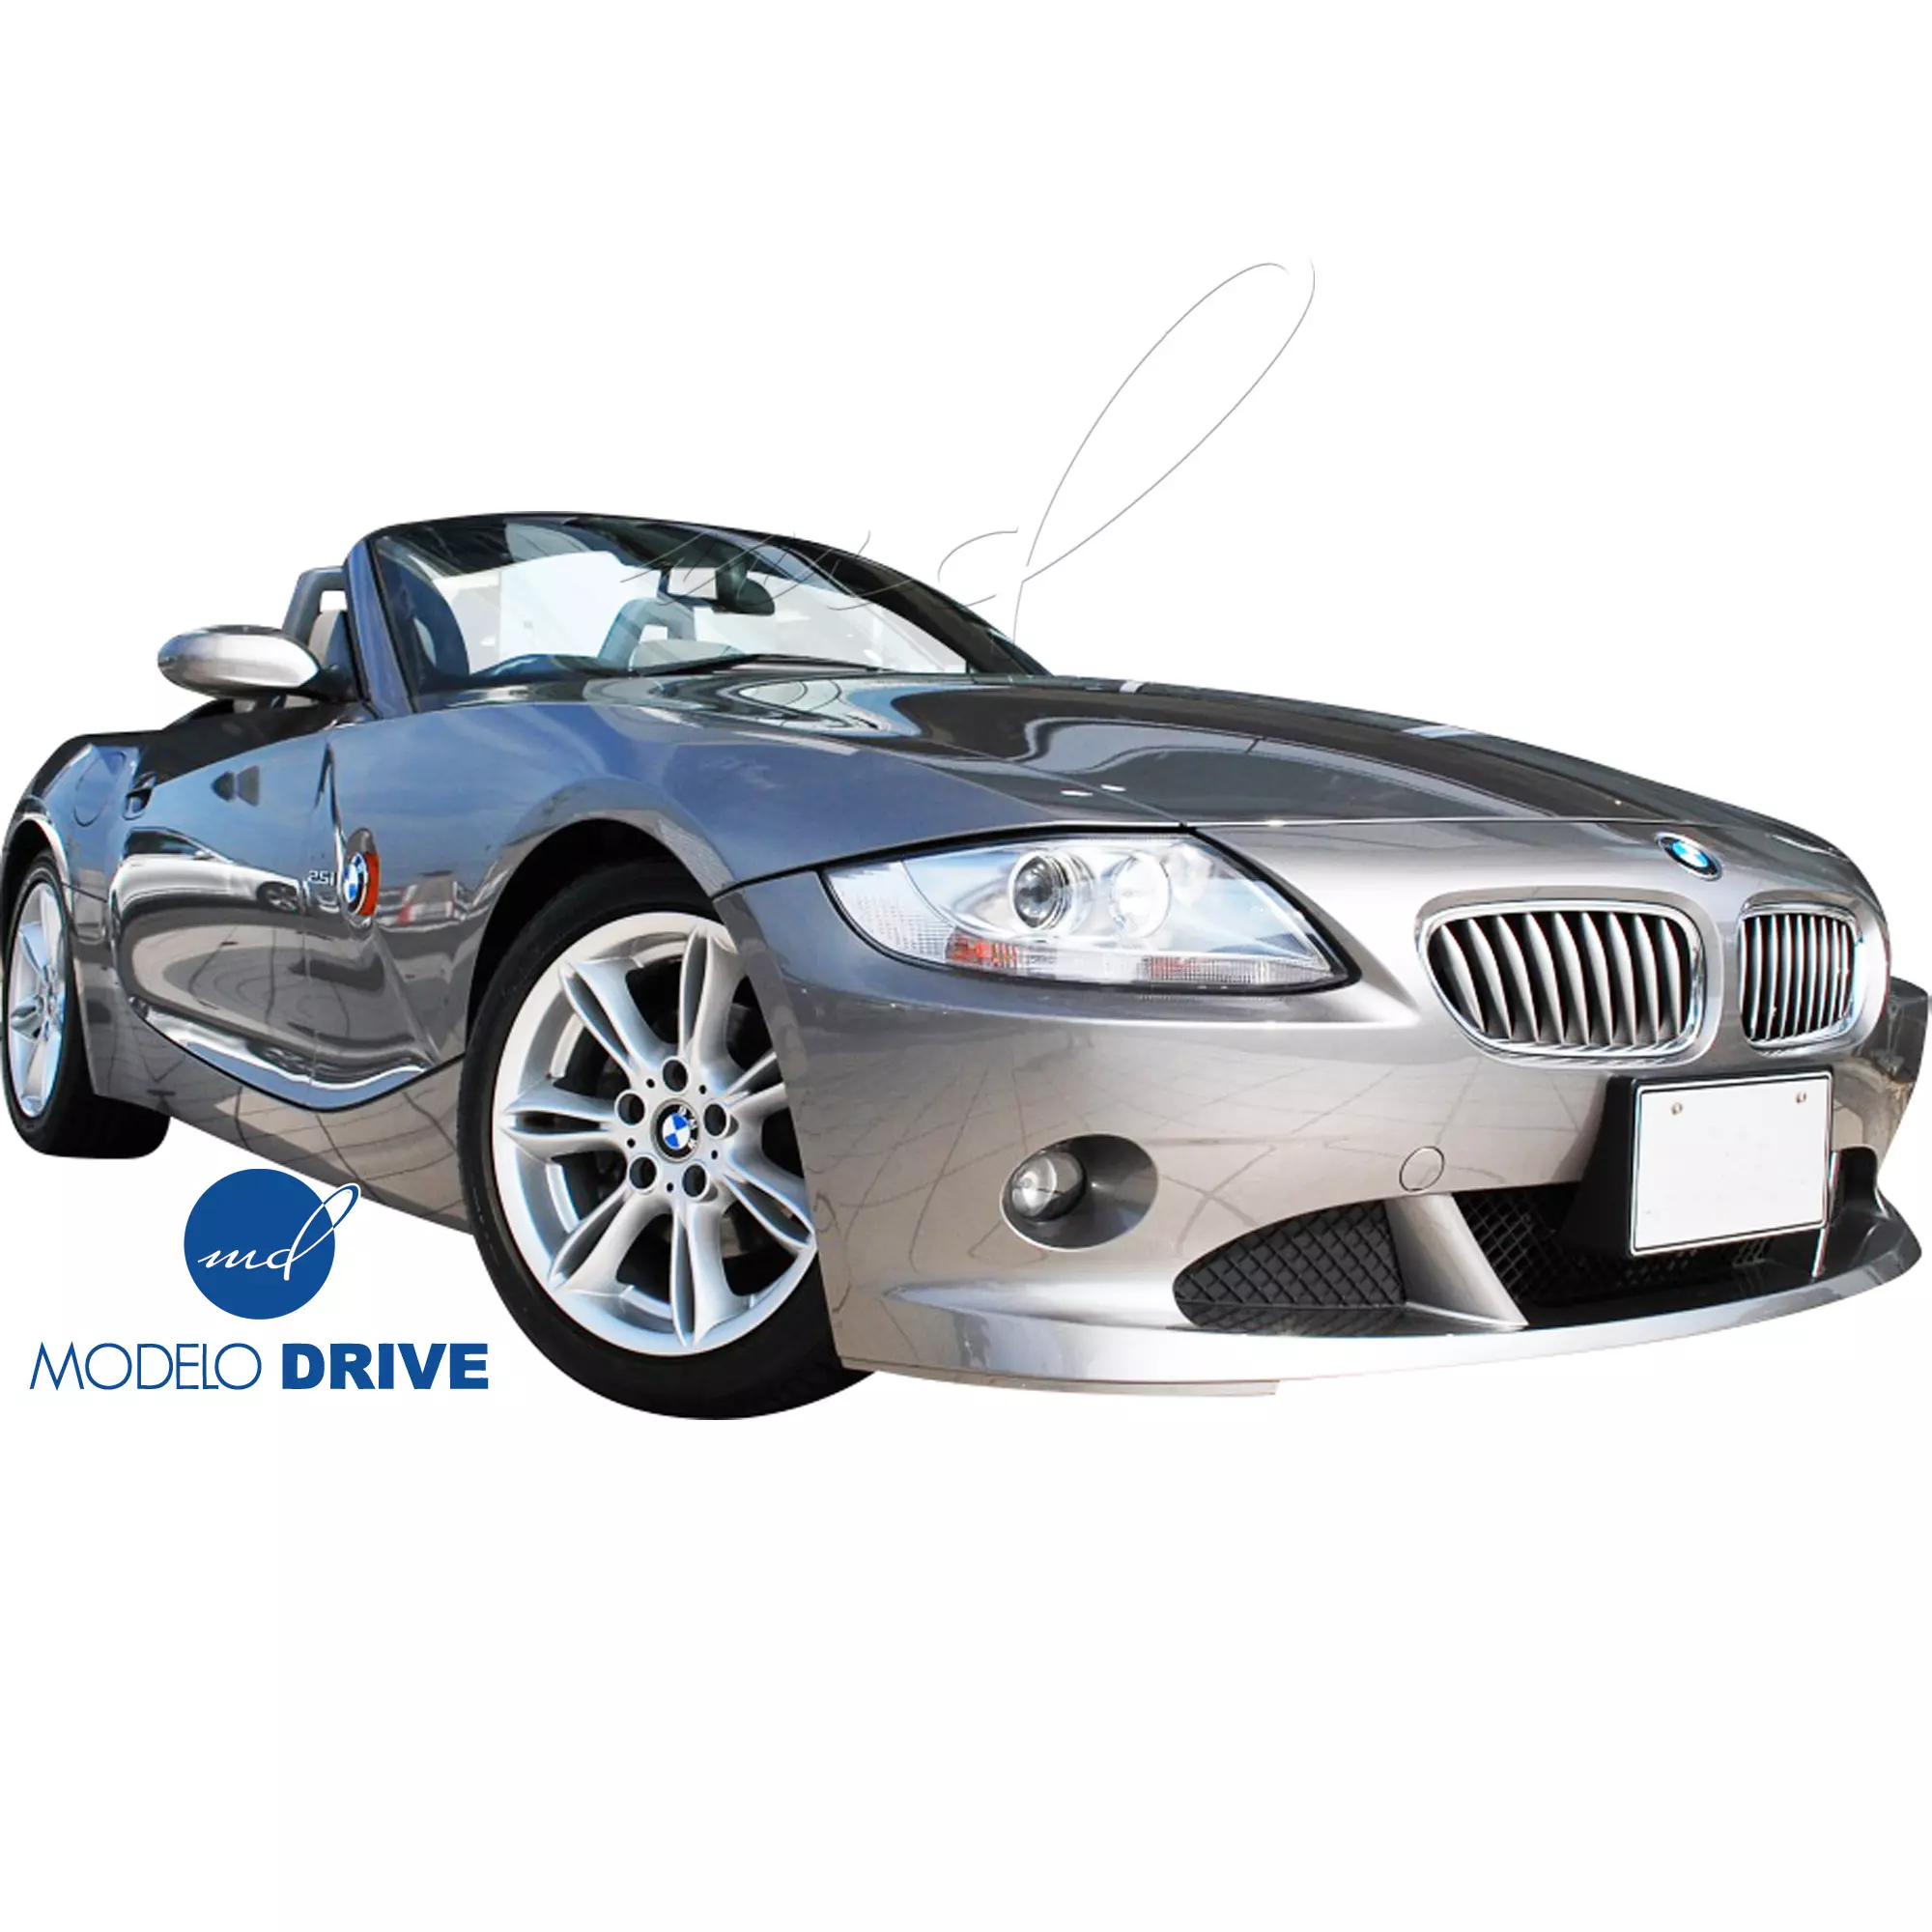 ModeloDrive FRP AERO Body Kit 4pc > BMW Z4 E85 2003-2005 - Image 31